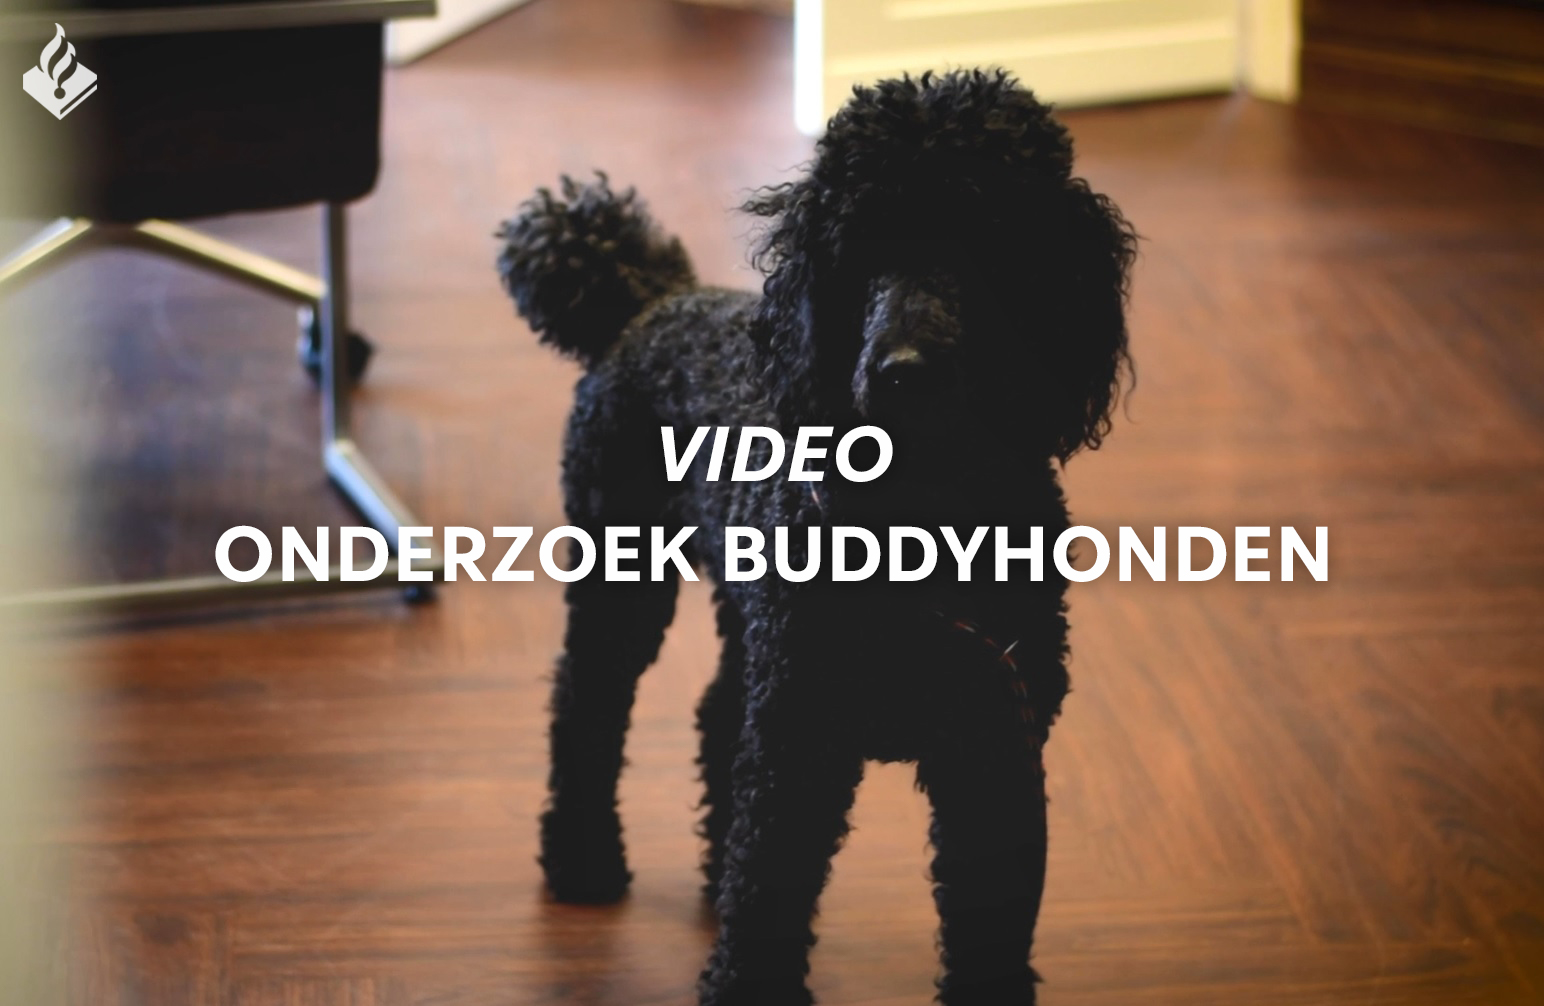 Video omslag onderzoek buddyhonden.jpg